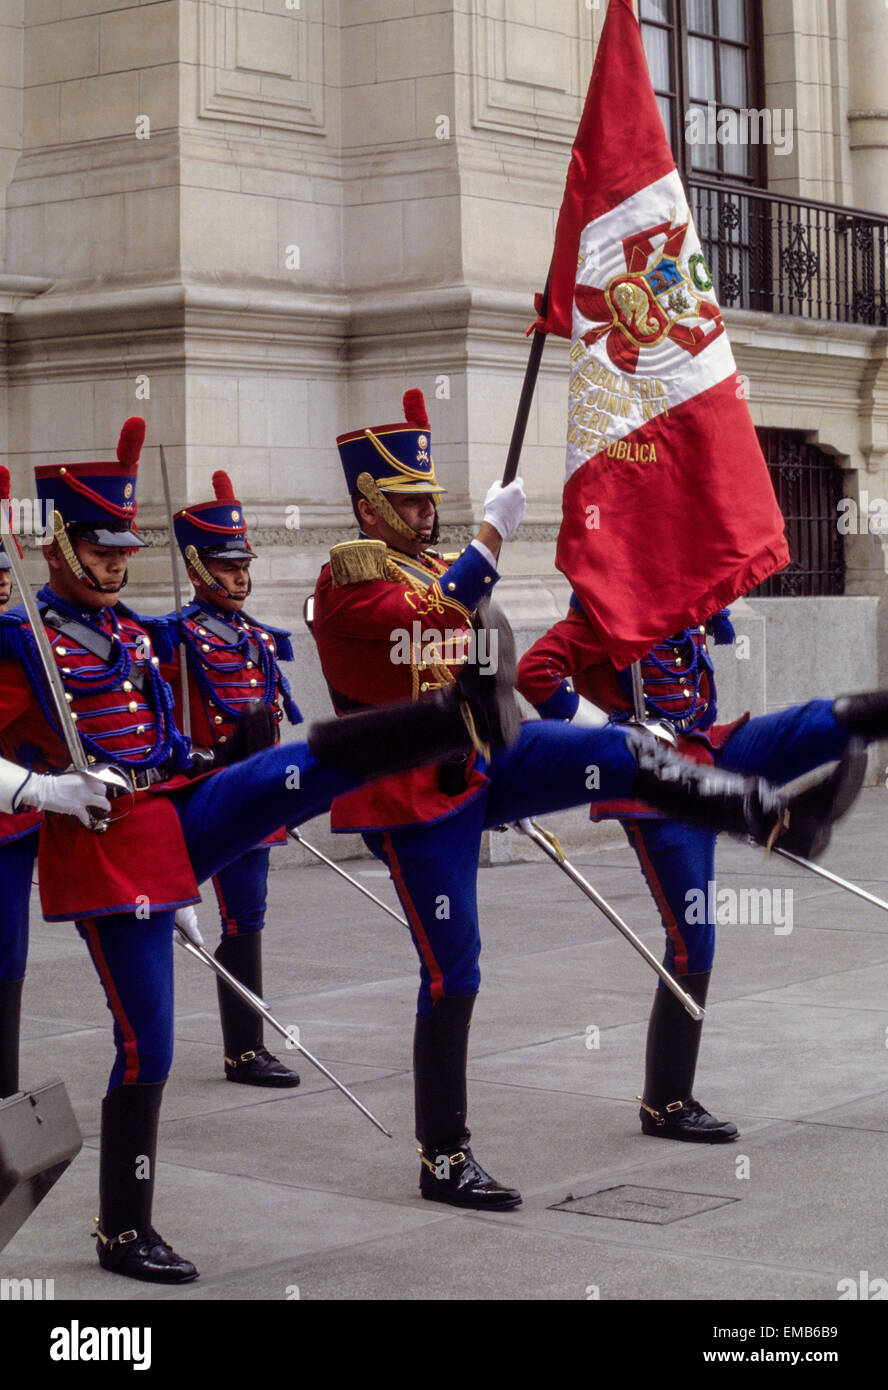 Perú, Lima. Cambio de Guardia en el Palacio Presidencial. Foto de stock